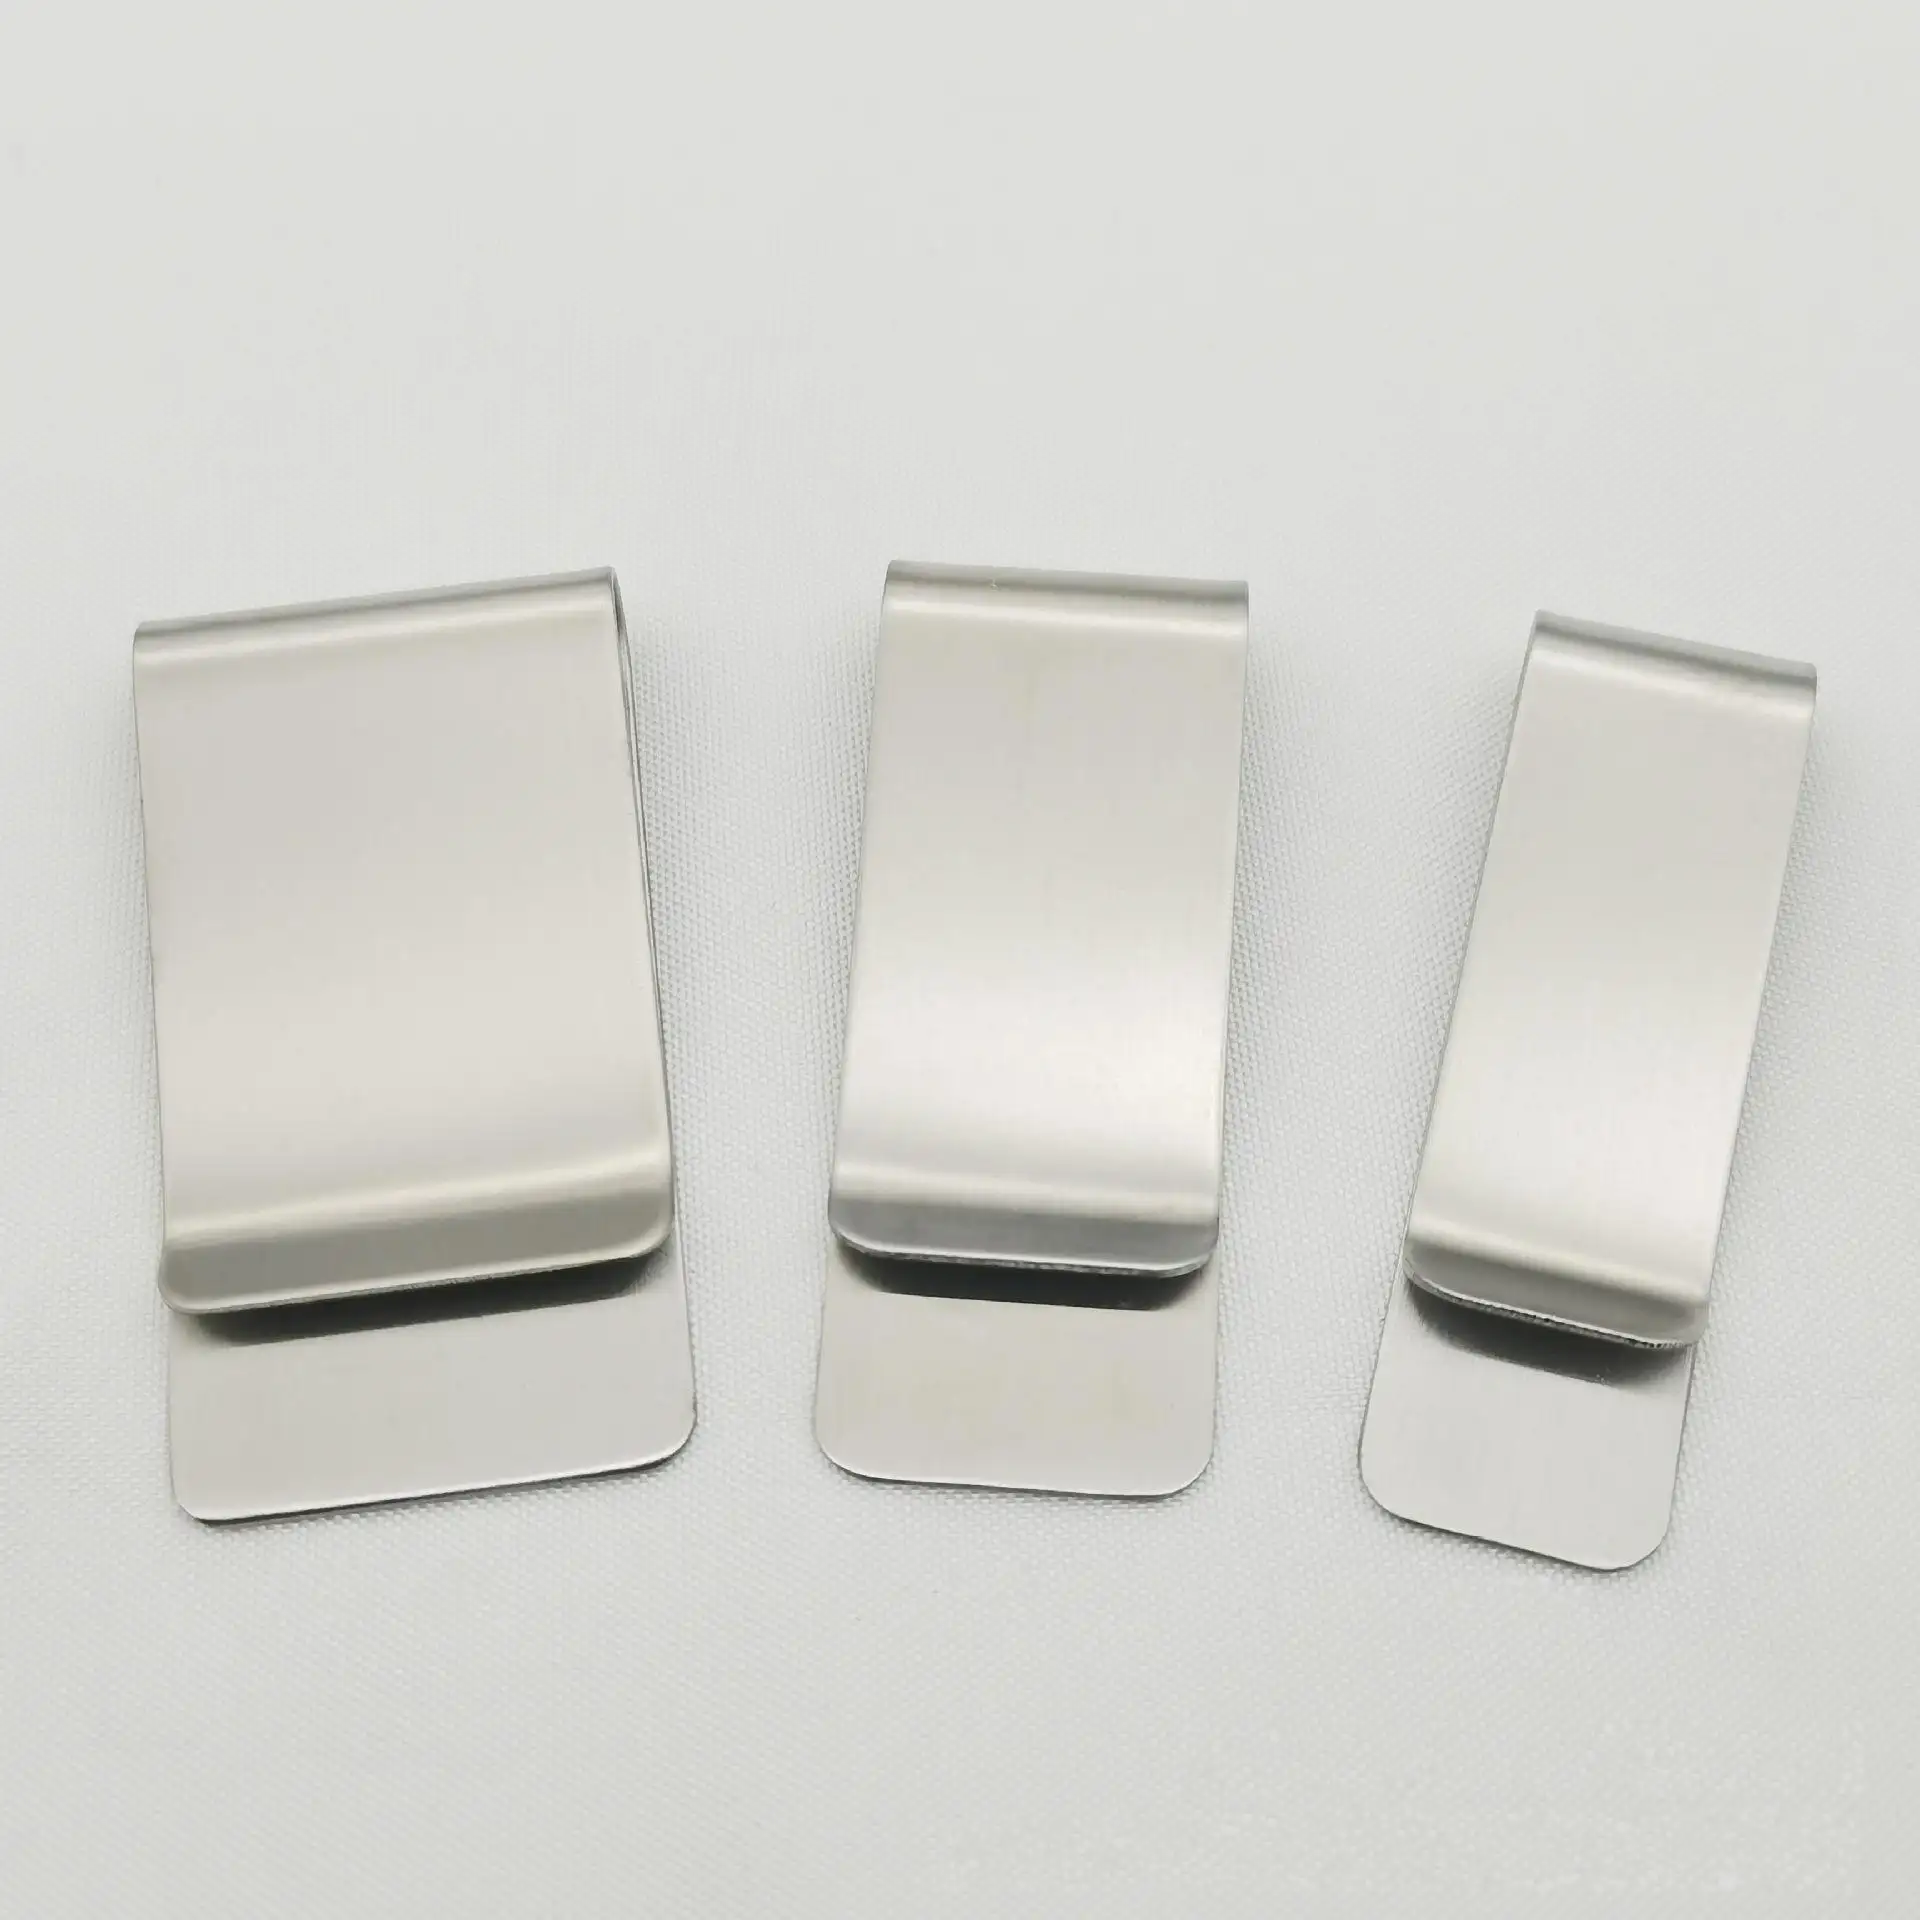 Dimensioni disponibili oro argento nero acciaio inossidabile fermasoldi stampa logo personalizzato